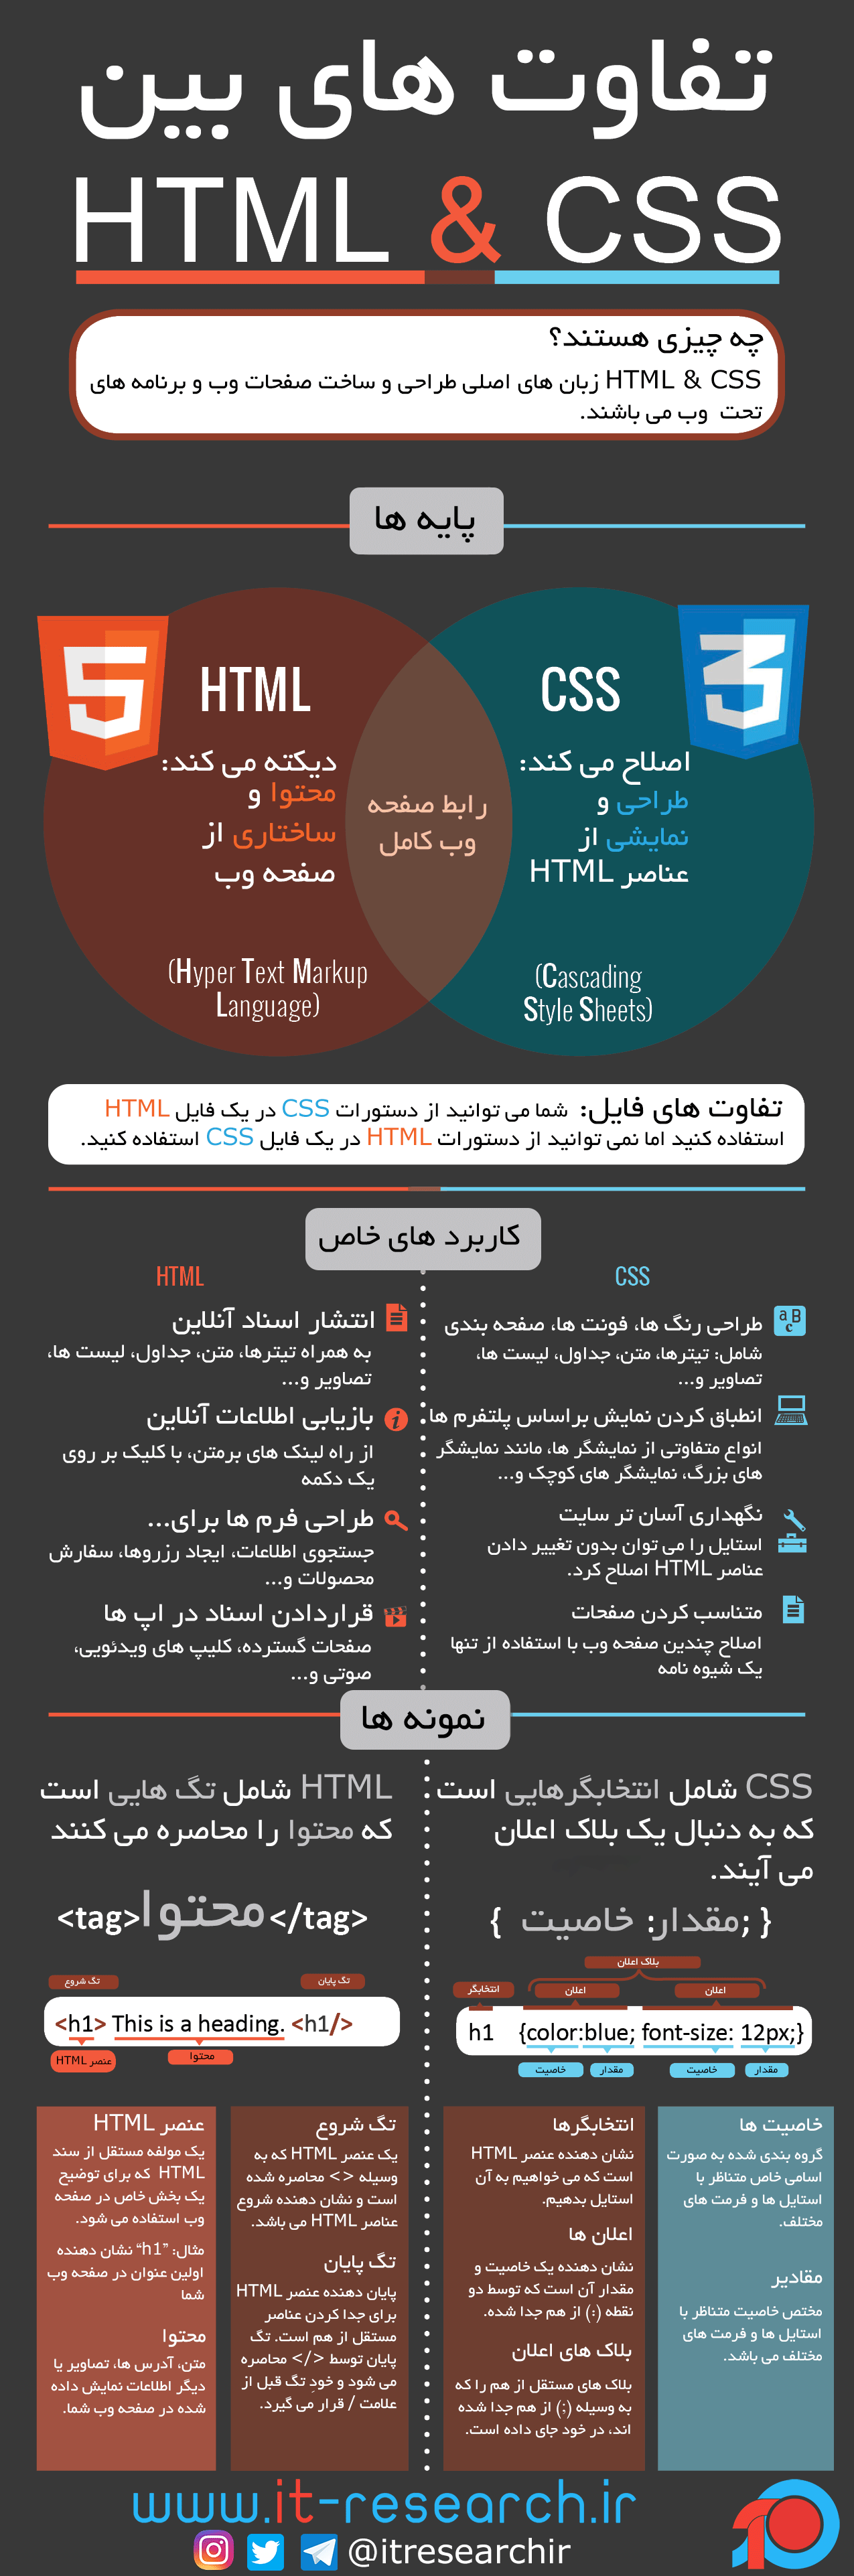 اینفوگرافیک: تفاوت های HTML و CSS